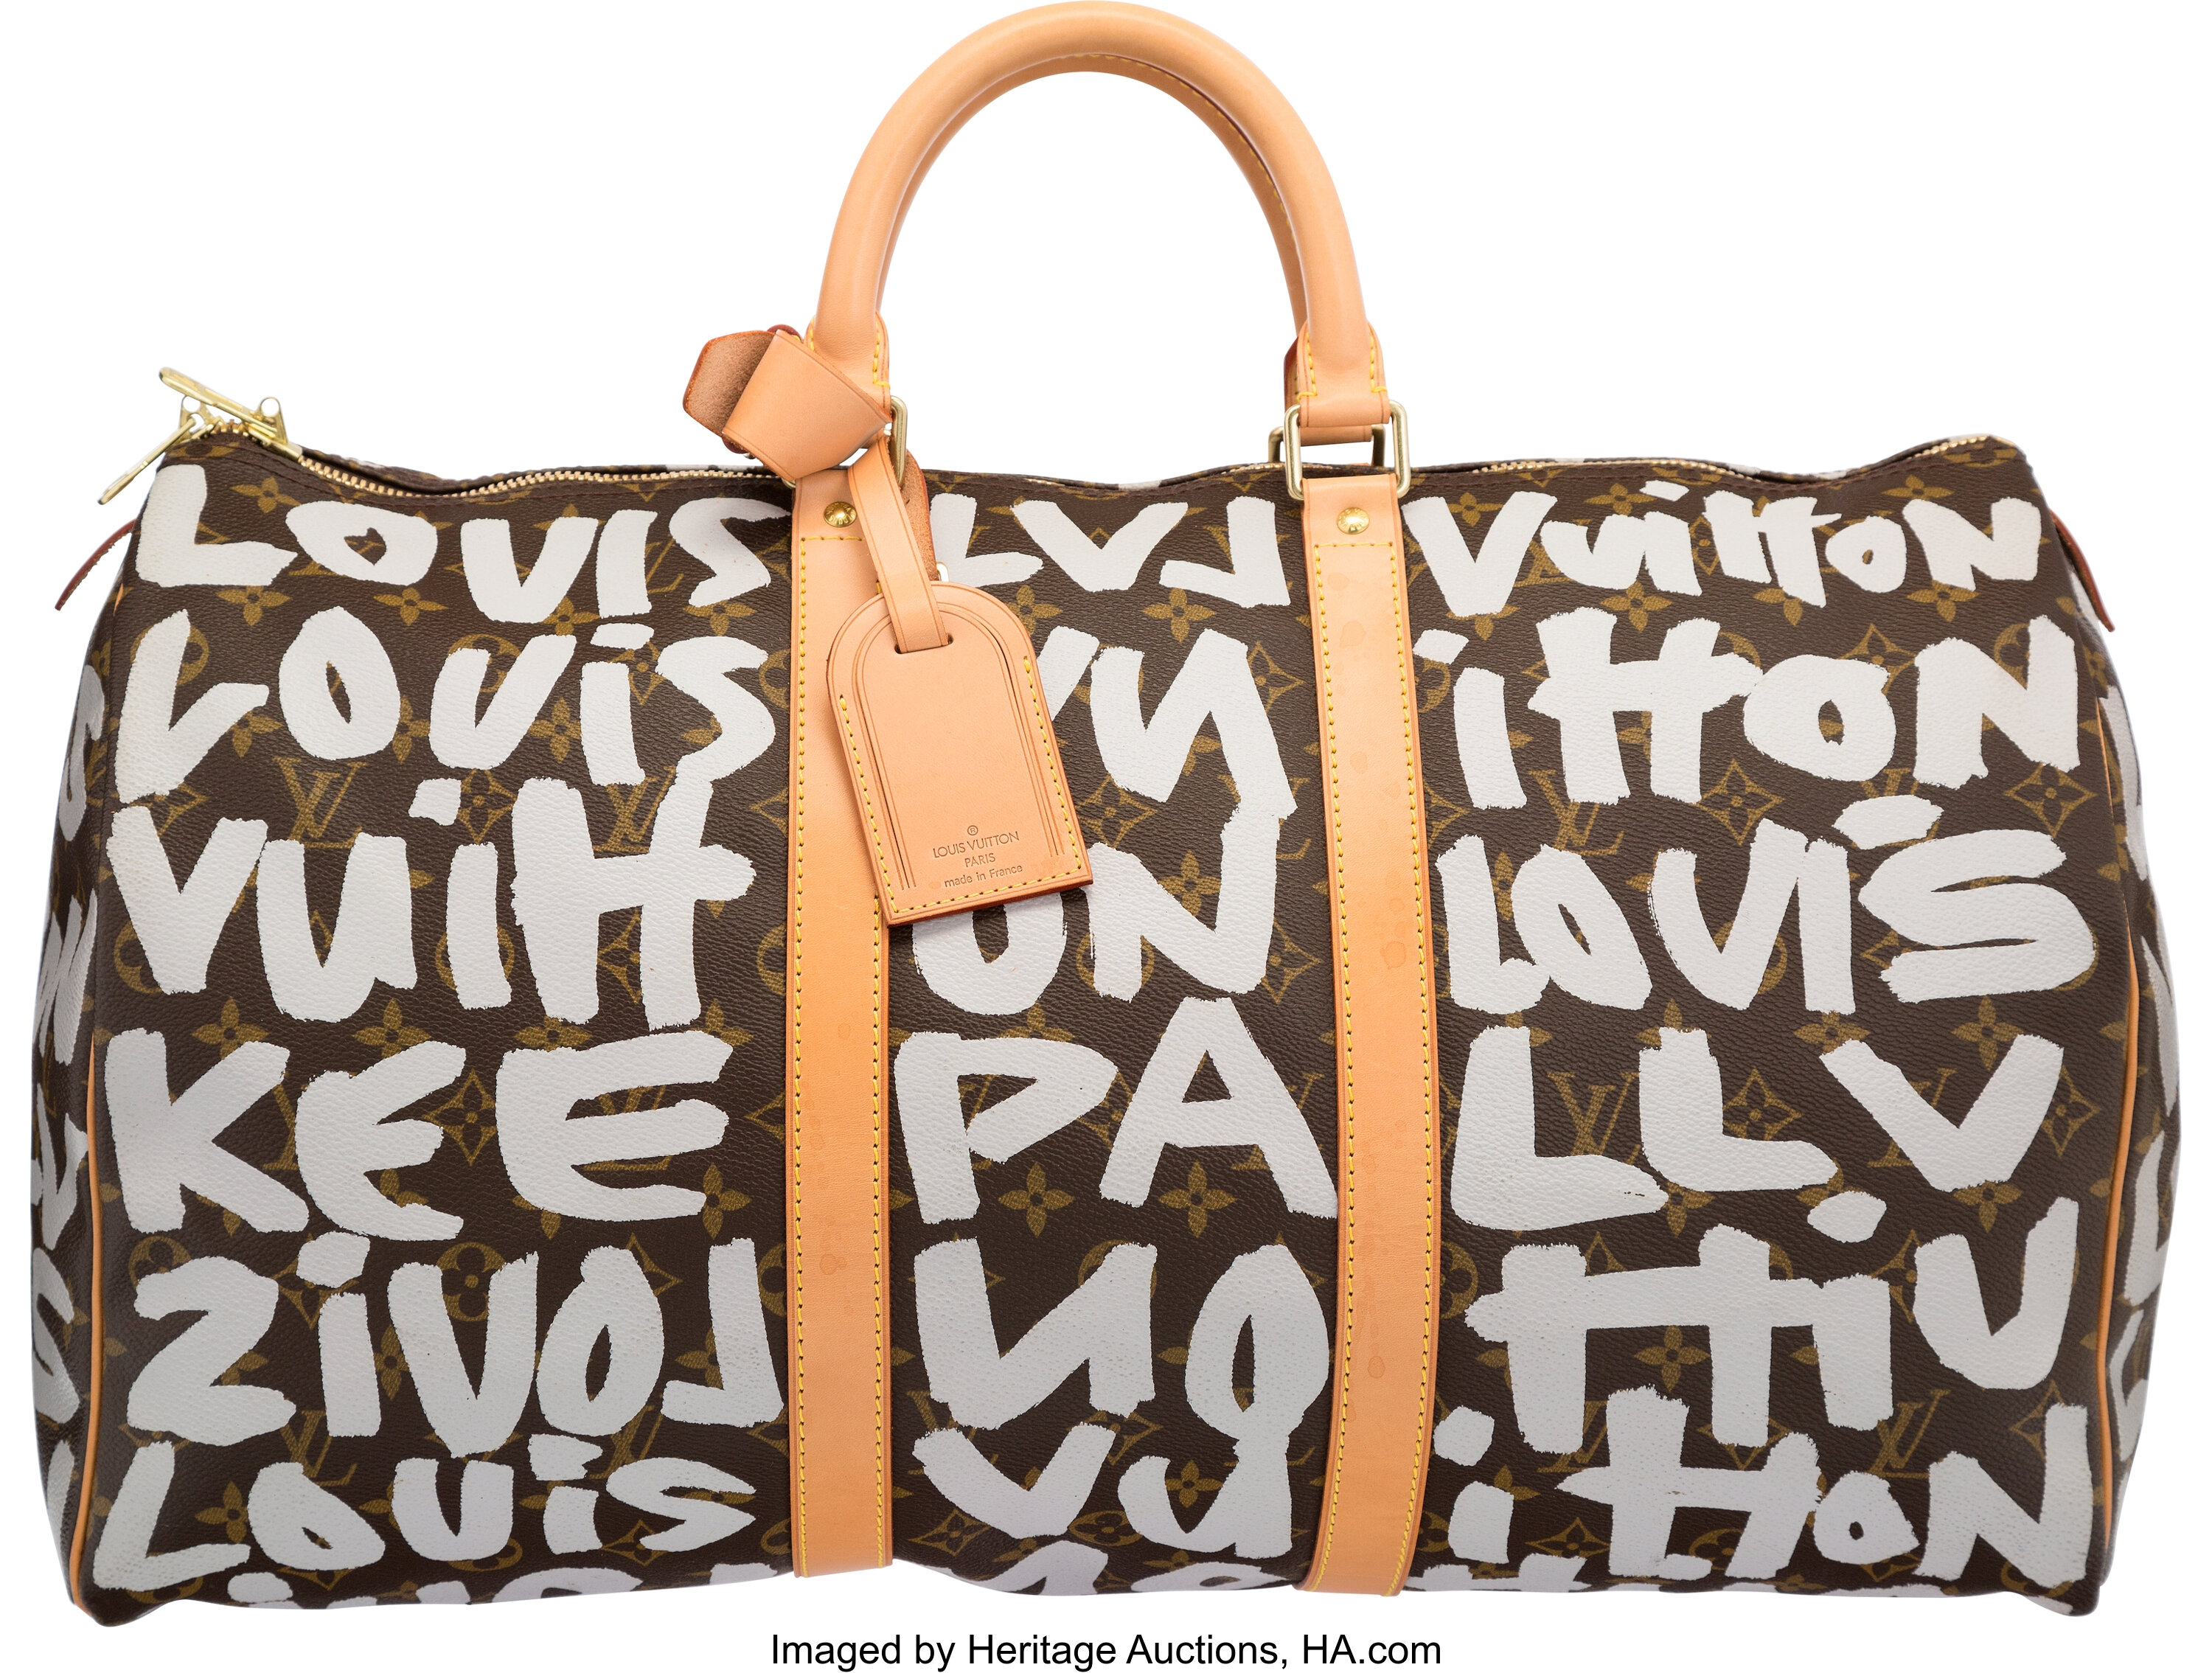 Louis Vuitton Gun Tote Bag by Street Art - Pixels